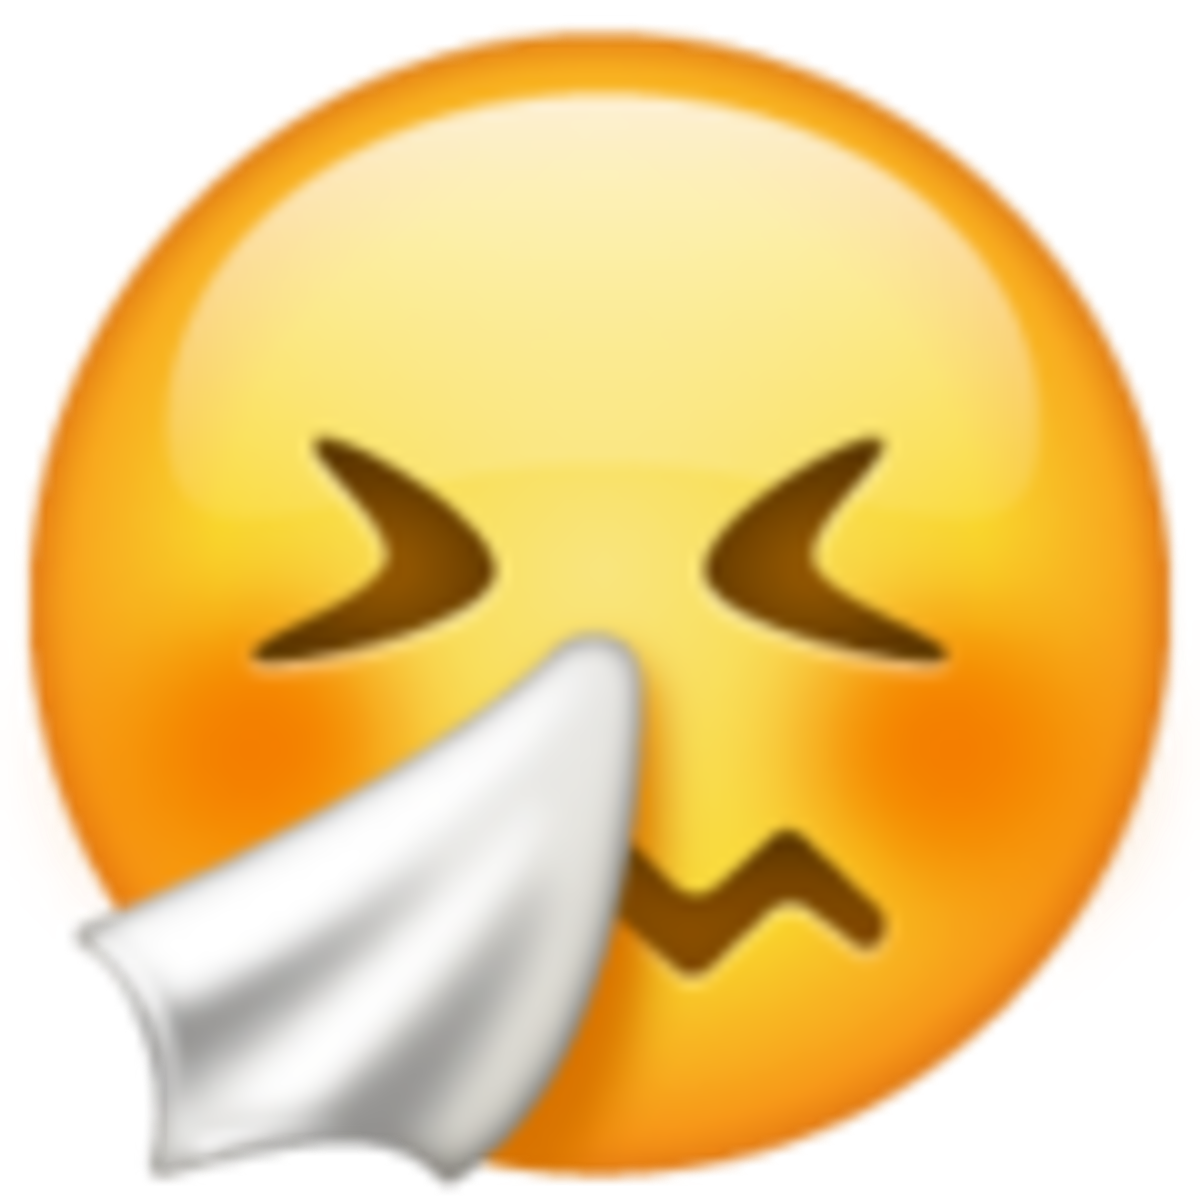 Emoji 1f927 de cara estornudando